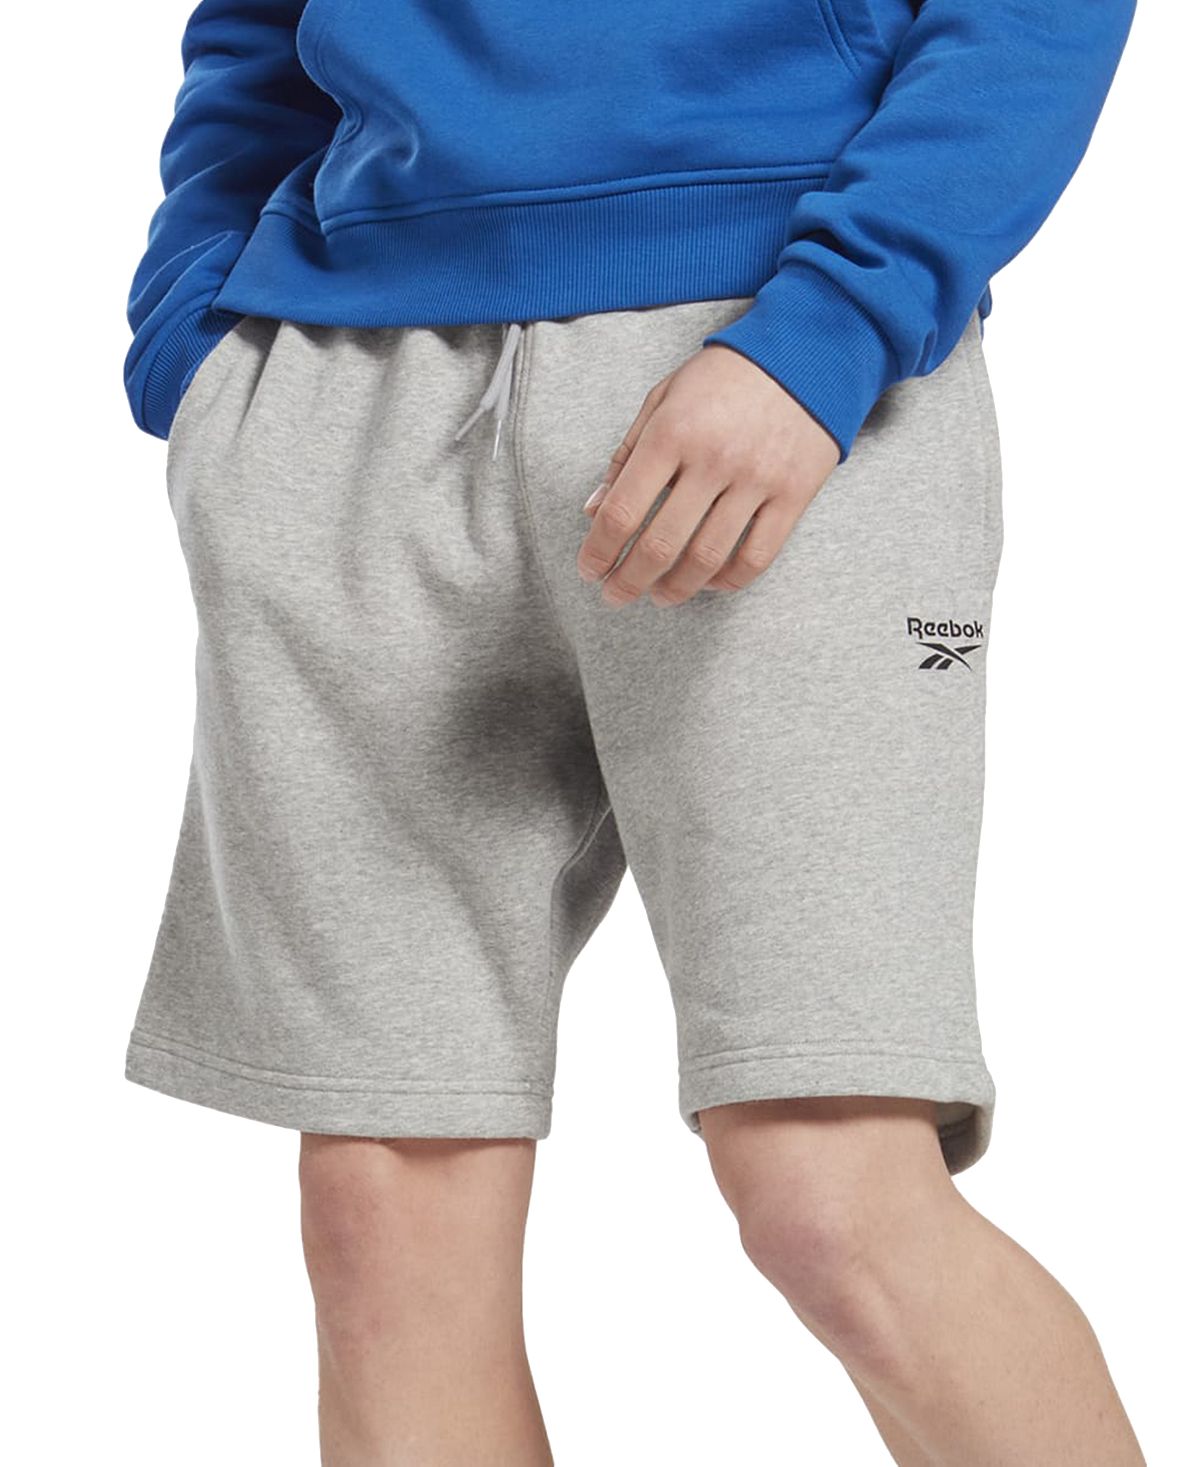 Мужские спортивные шорты классического кроя Identity с логотипом Reebok шорты reebok reebok identity energy fleece short размер m синий